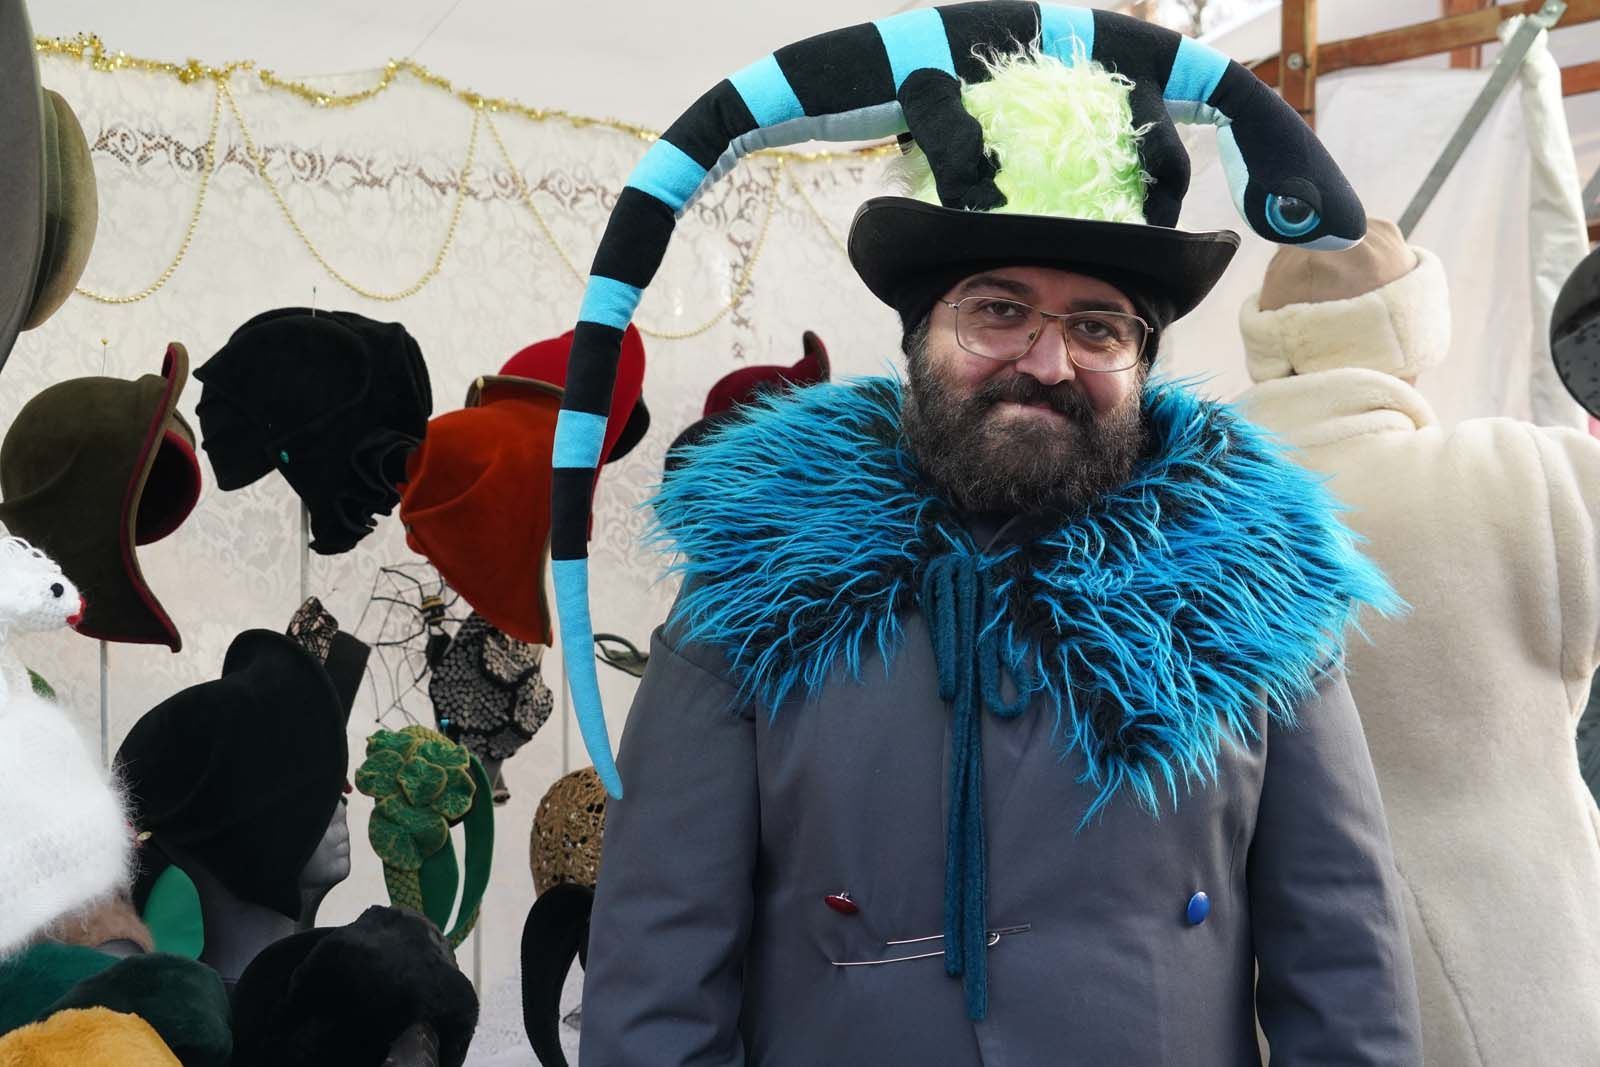 Gianni Klein ist Hatartist. Bei Weihnachten in Westend in Berlin-Charlottenburg steht er vor seinem Stand mit einer schwarz-blau geschwungenen Stoffschlange über dem Kopf. Gianni Klein ist bekannt für seine verspielten Hutkreationen.